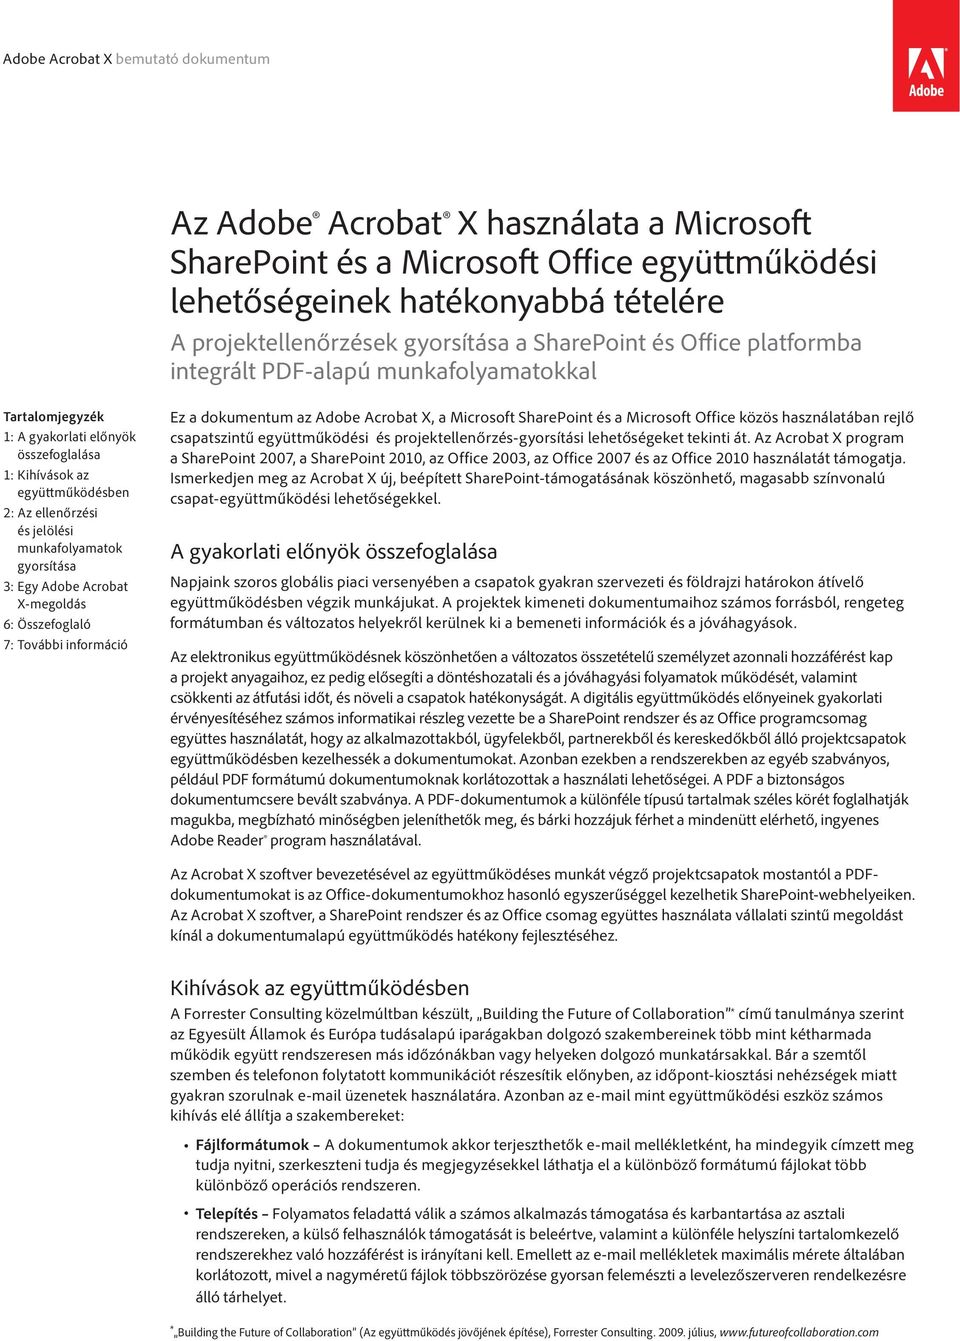 Acrobat X-megoldás 6: Összefoglaló 7: További információ Ez a dokumentum az Adobe Acrobat X, a Microsoft SharePoint és a Microsoft Office közös használatában rejlő csapatszintű együttműködési és